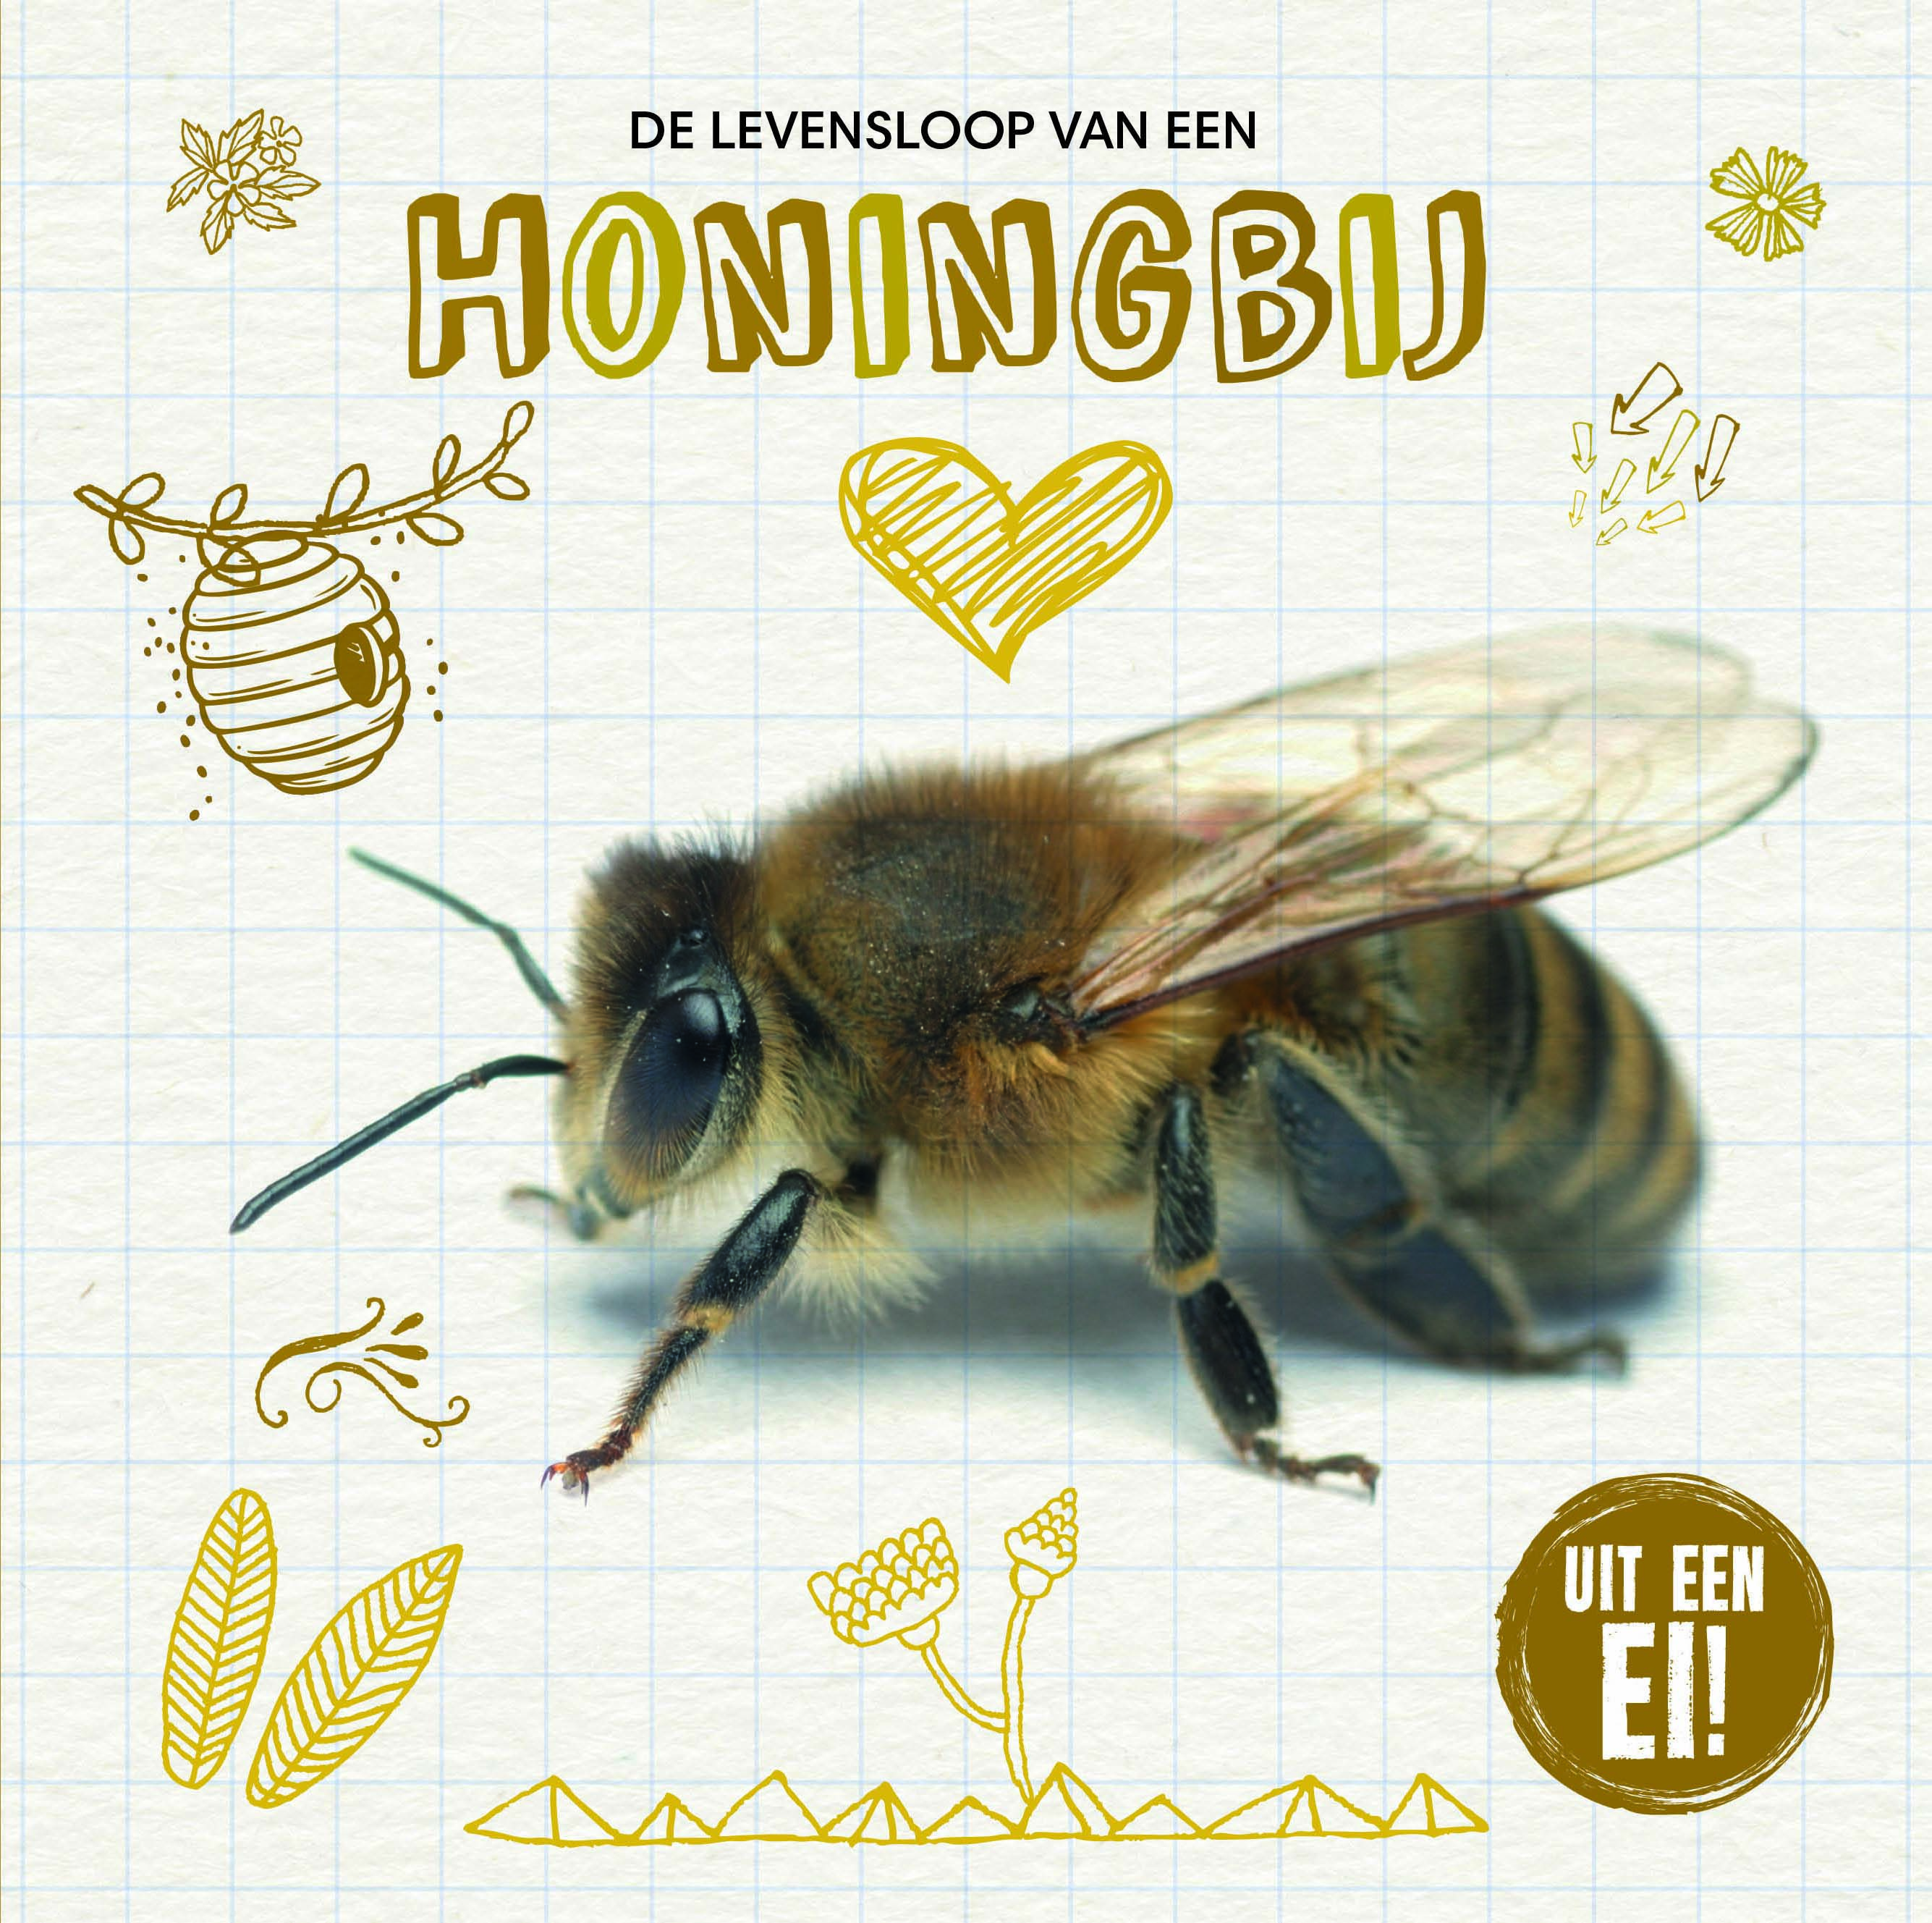 CNBUEI002 De levensloop van een honingbij